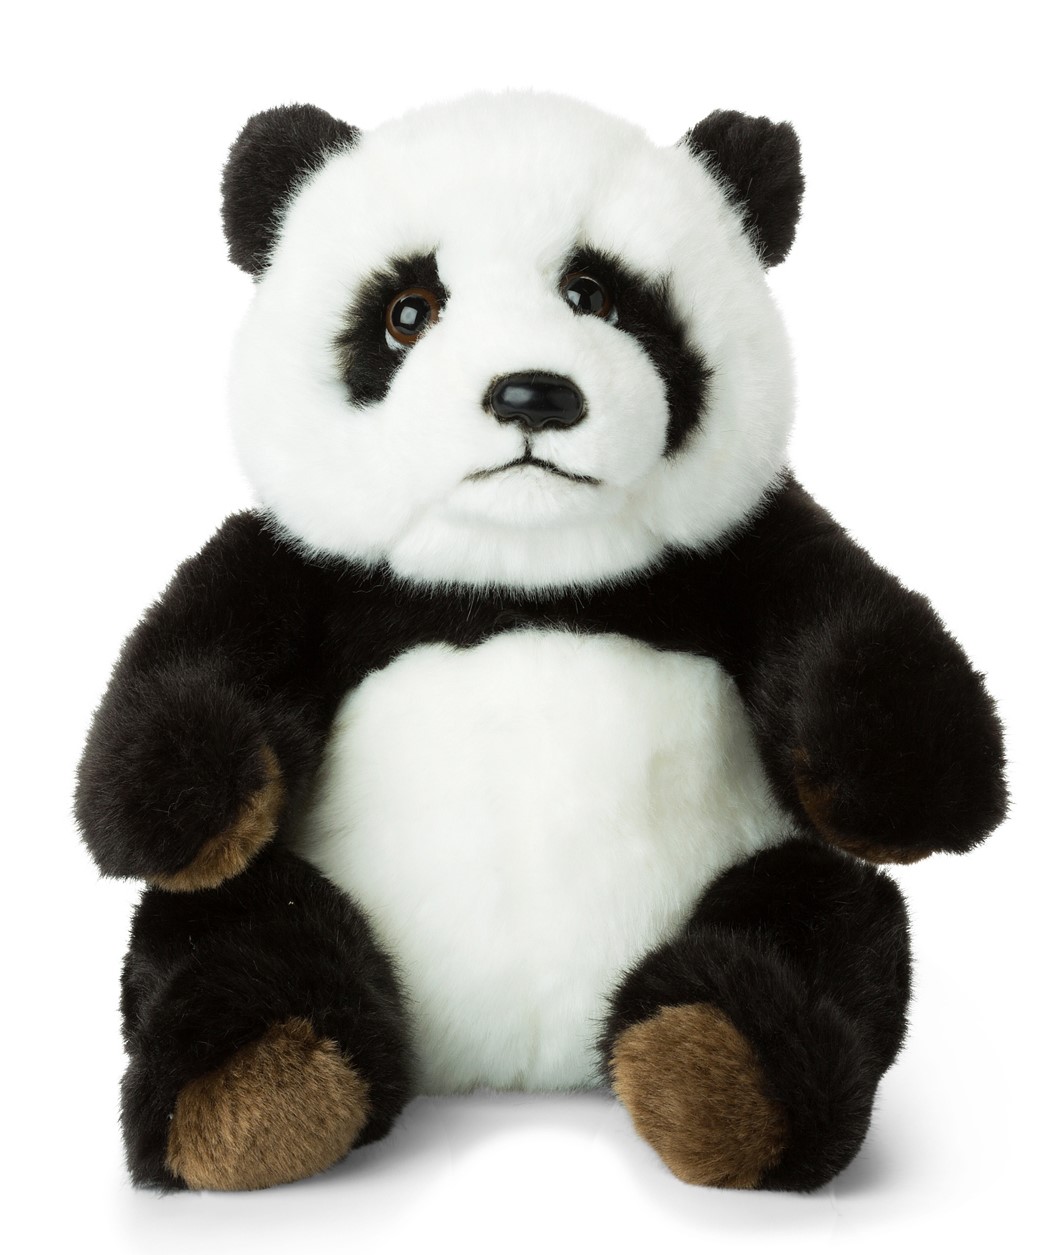 WWF (Vrldsnaturfonden) Panda - WWF (Verdensnaturfonden)